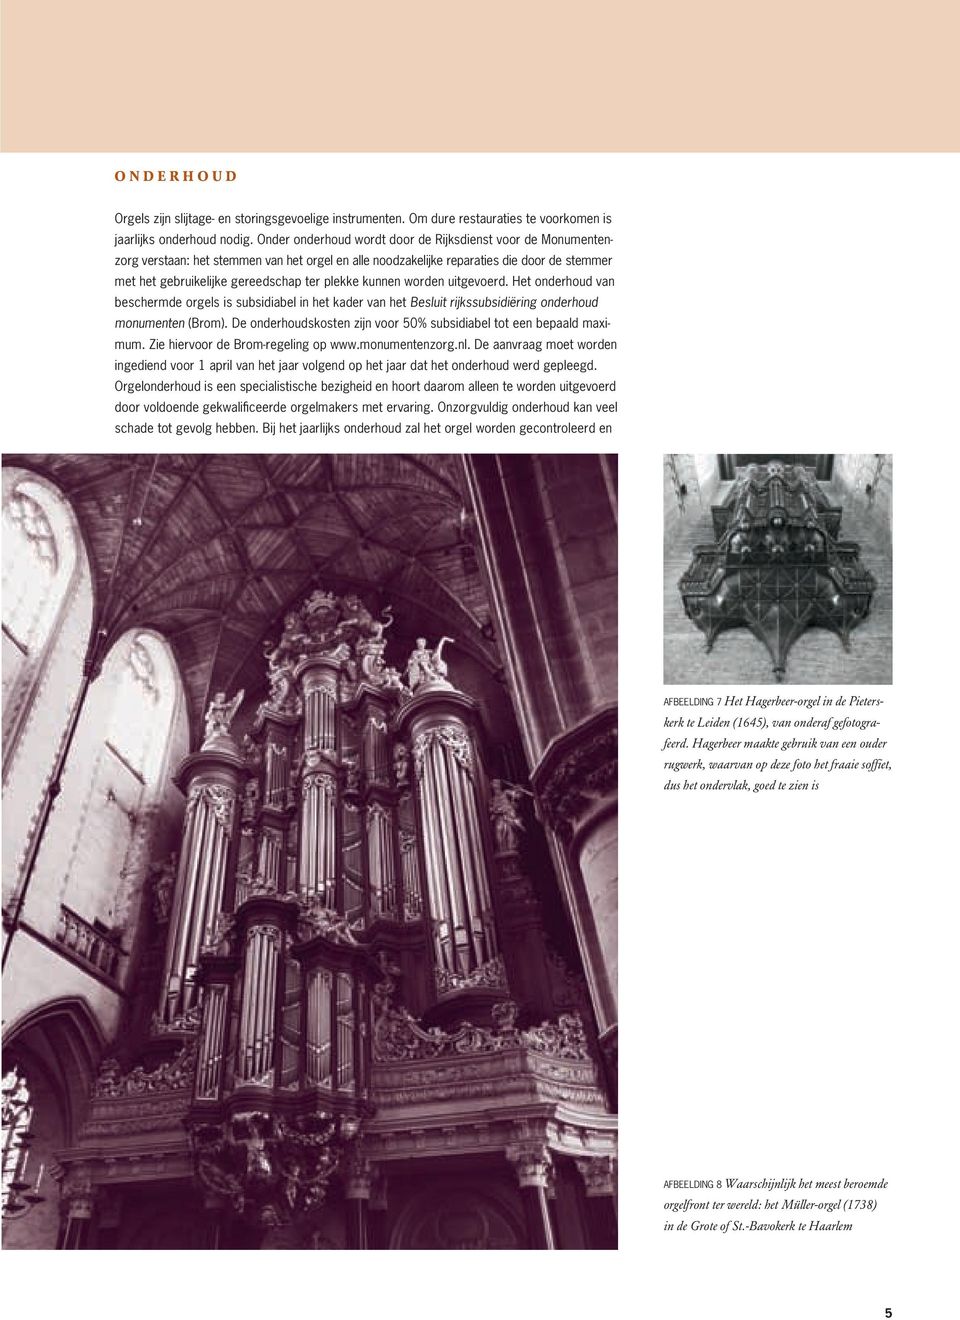 kunnen worden uitgevoerd. Het onderhoud van beschermde orgels is subsidiabel in het kader van het Besluit rijkssubsidiëring onderhoud monumenten (Brom).